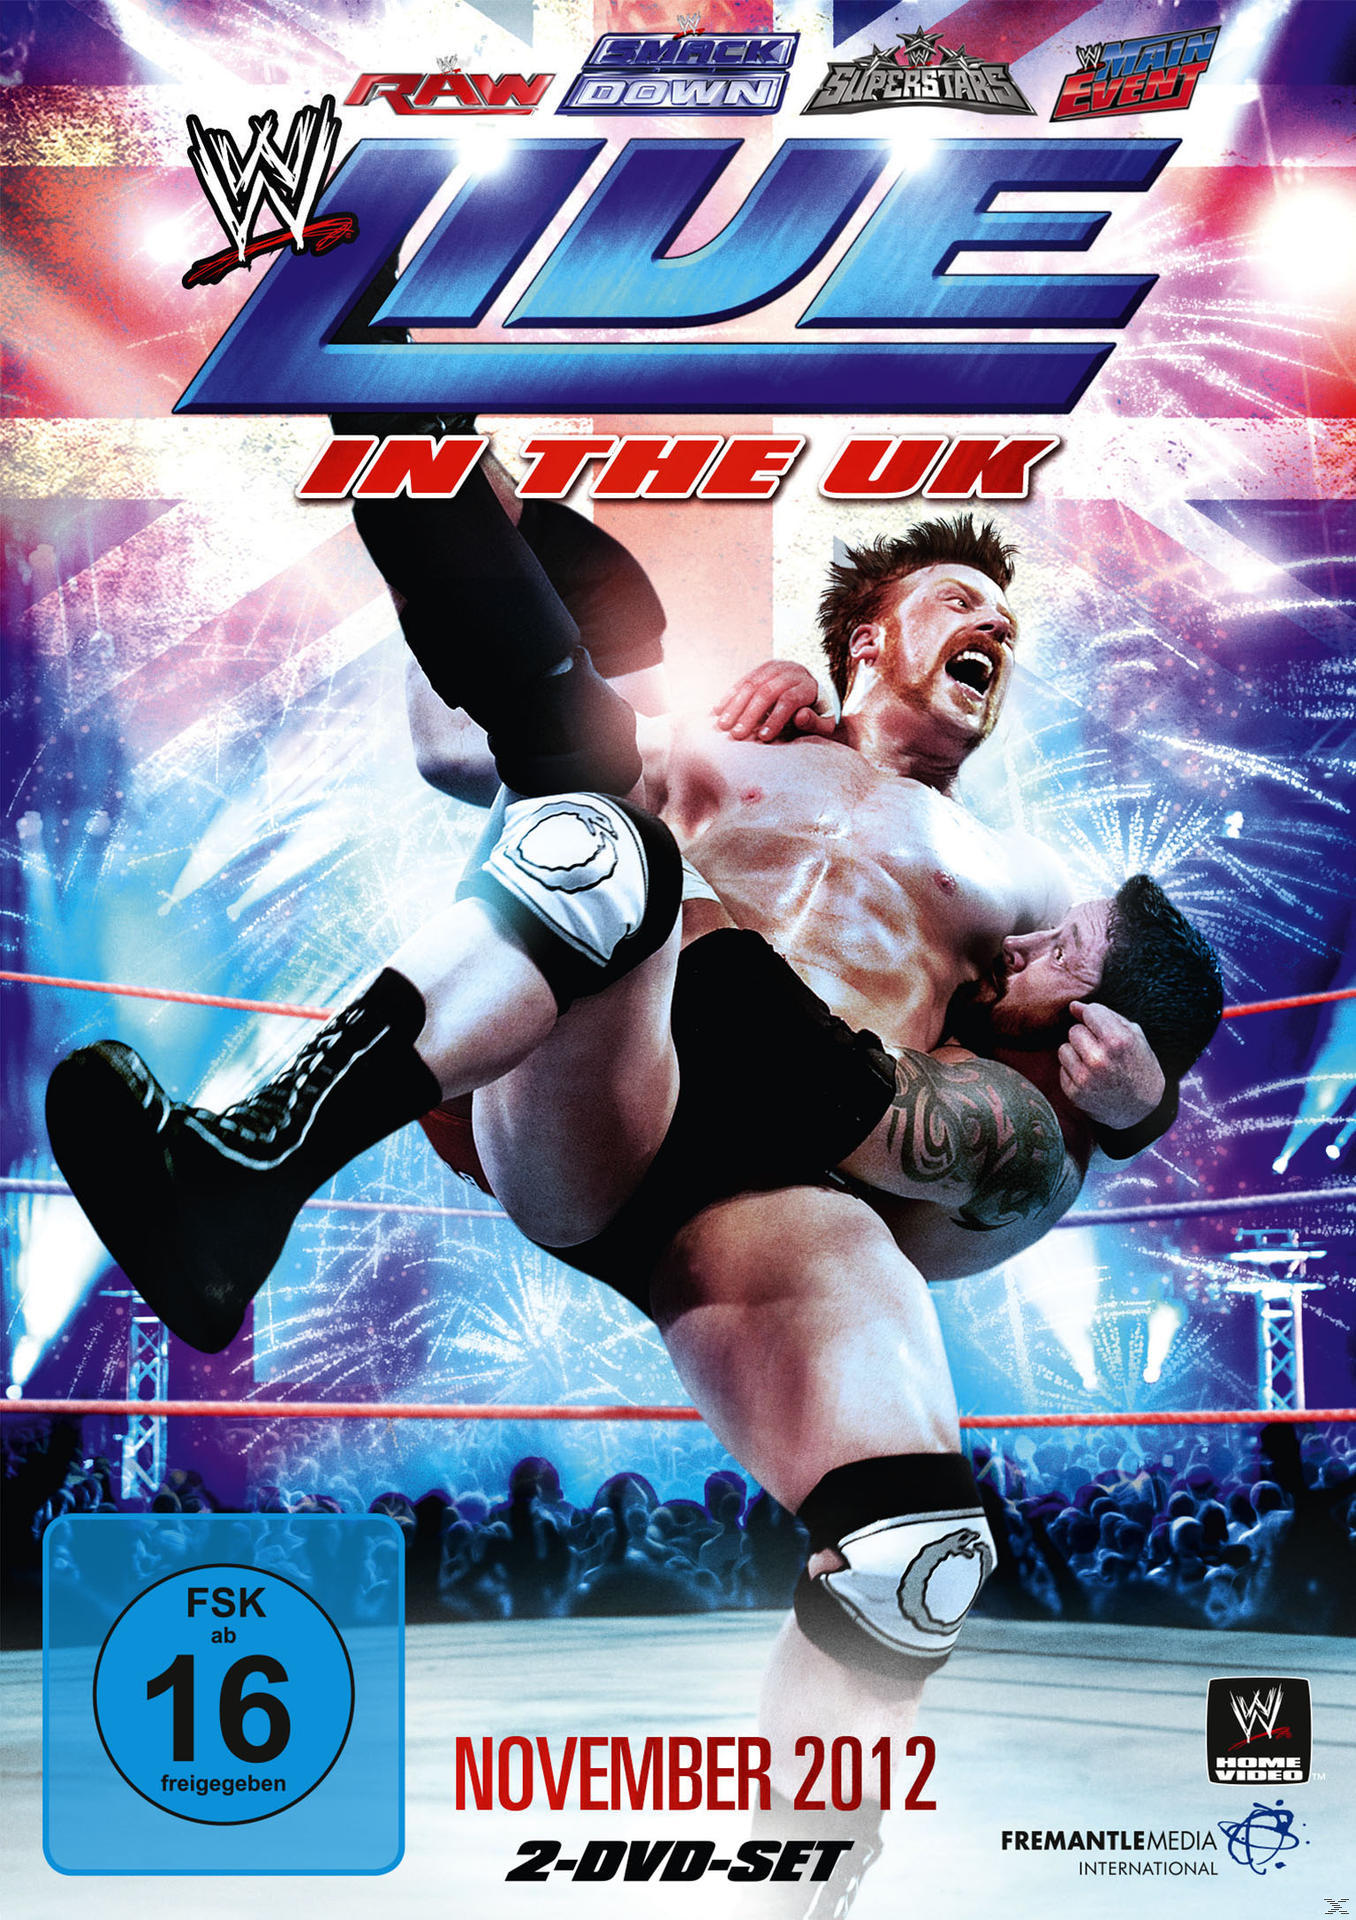 November - Live 2012 the UK in DVD